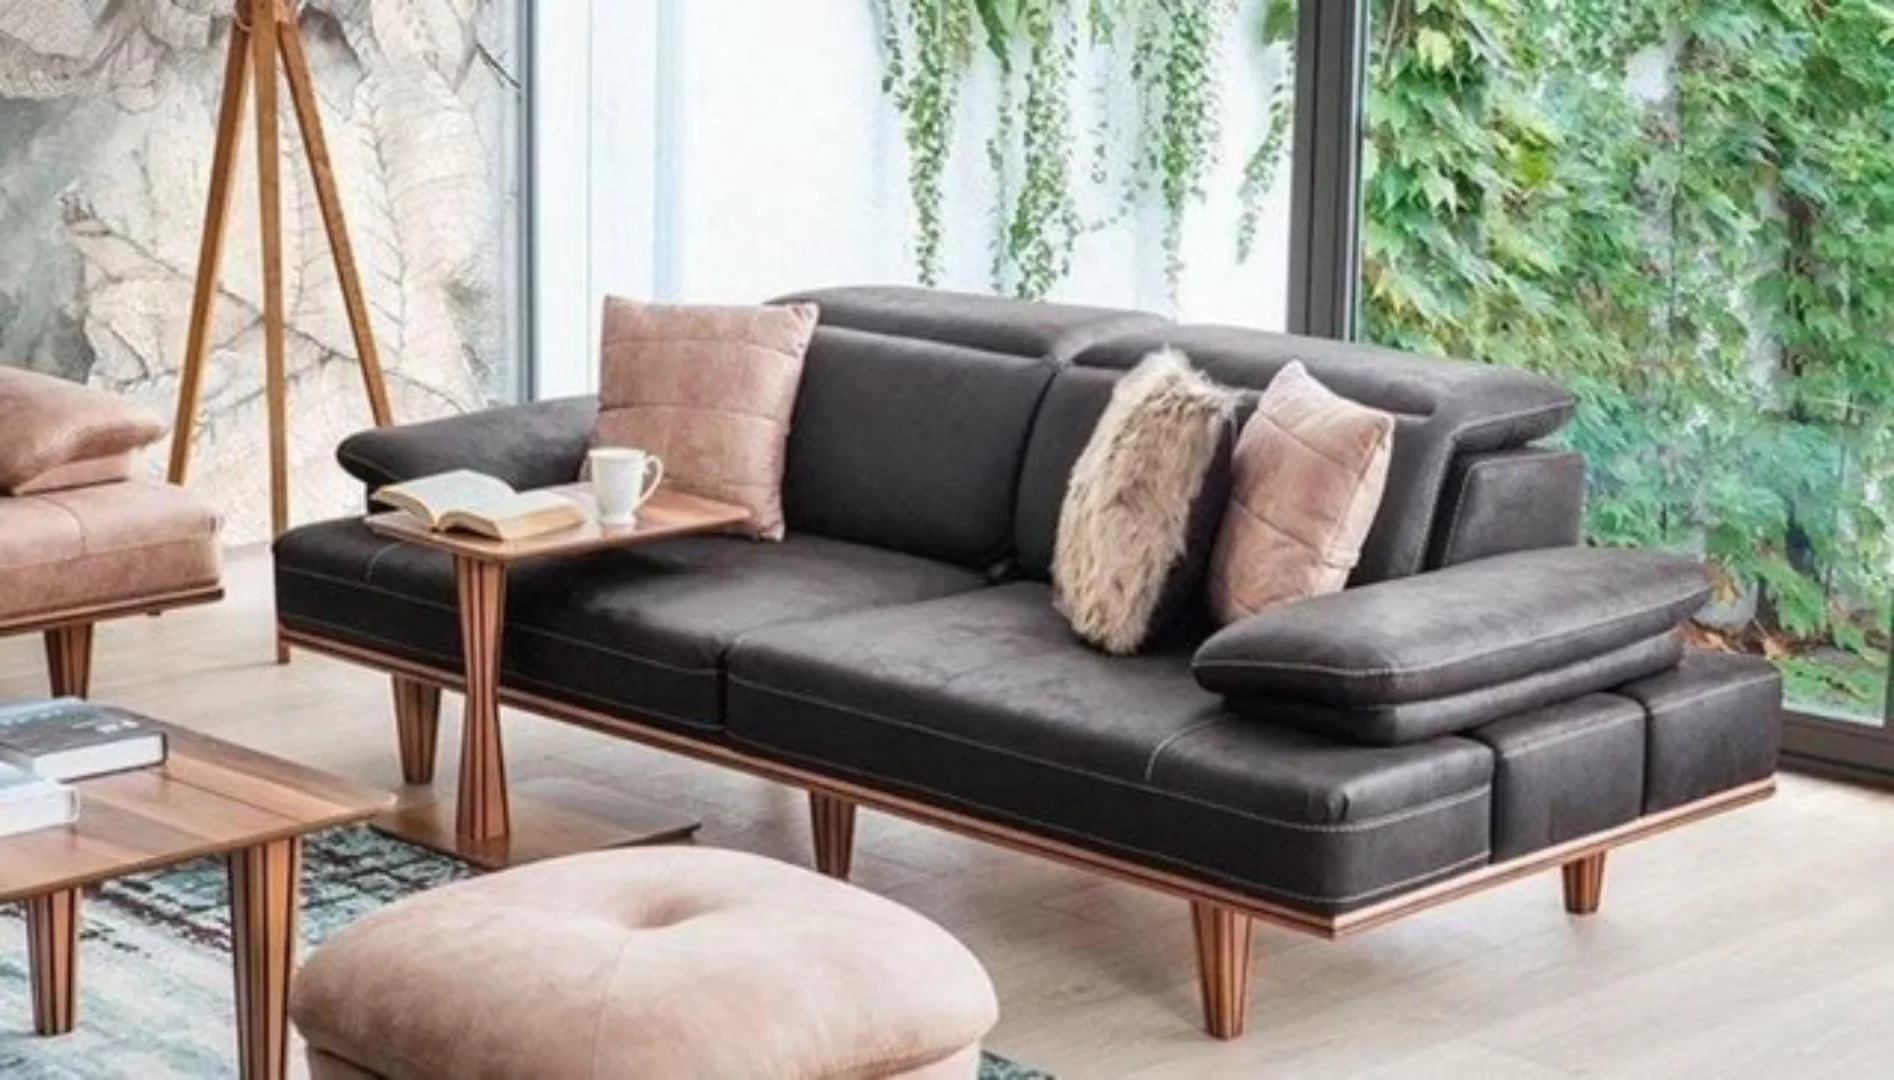 JVmoebel Sofa Multifunktion Sofa Couch Dreisitzer Couchen Sofas Polster Möb günstig online kaufen